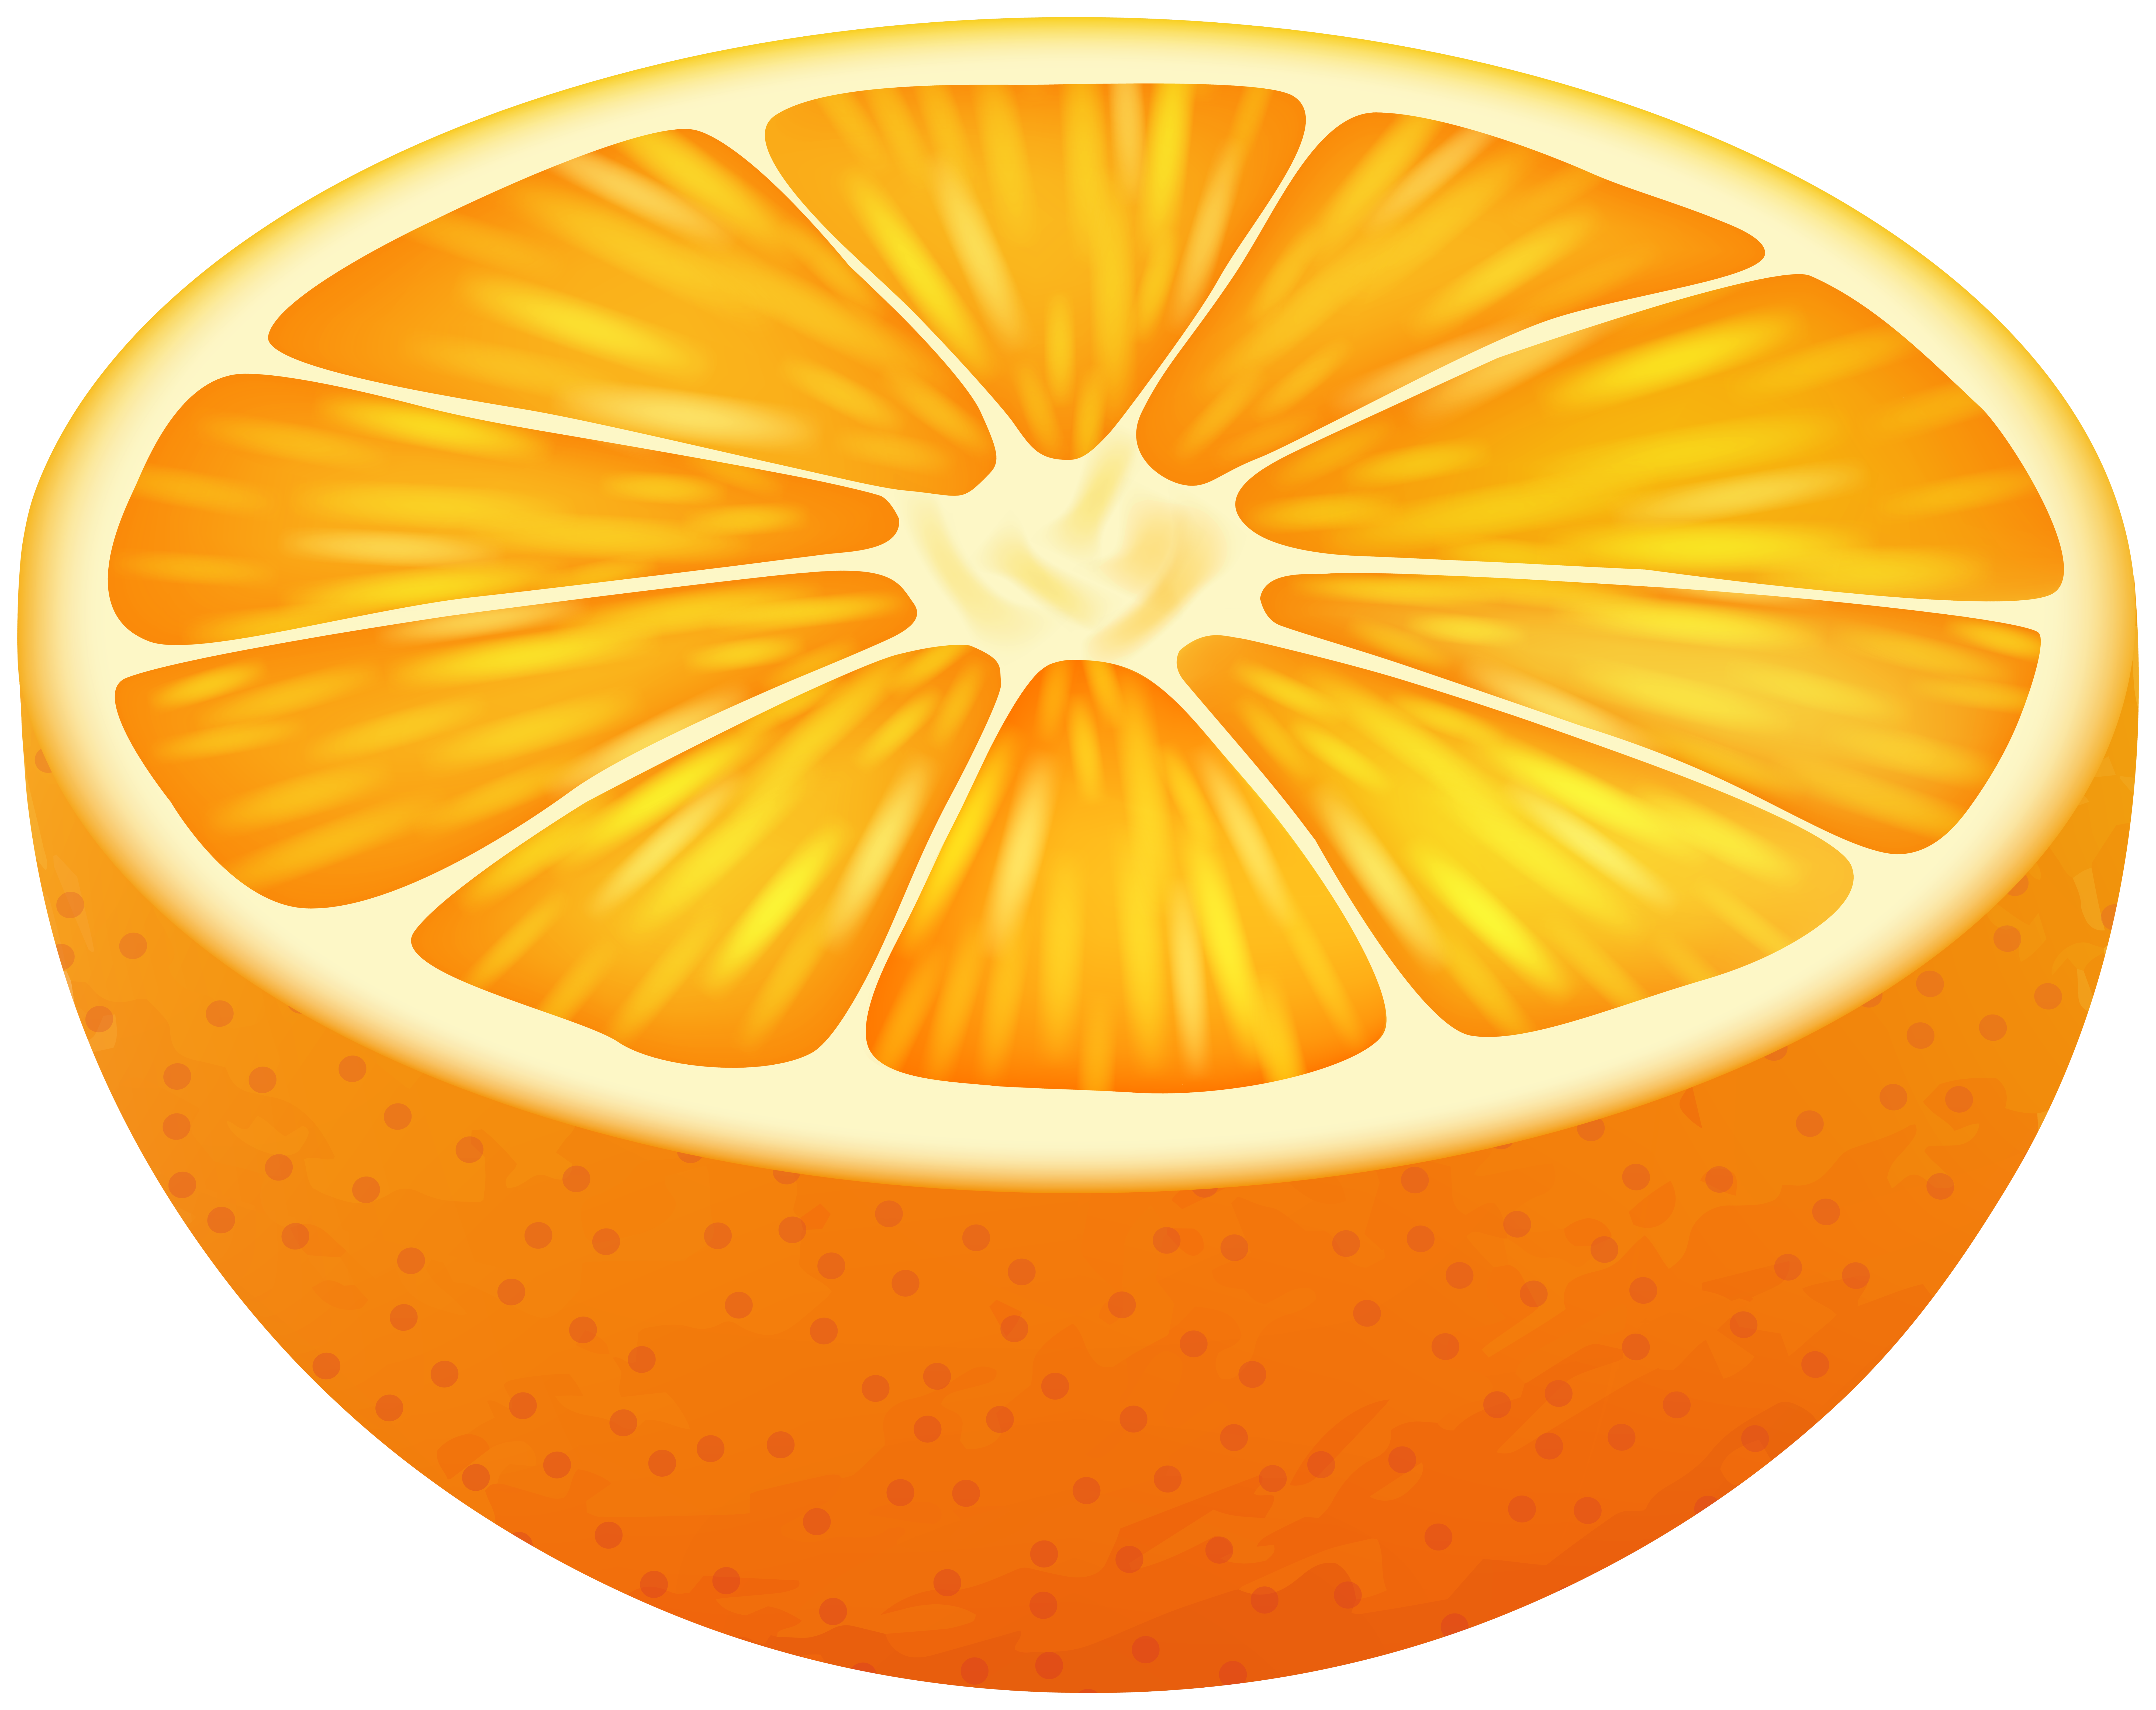 Апельсин картинка для детей на прозрачном фоне. Апельсин на прозрачном фоне. Апельсин на прозрачном фоне для фотошопа. Апельсин вид сверху. Сочный апельсин на белом фоне.